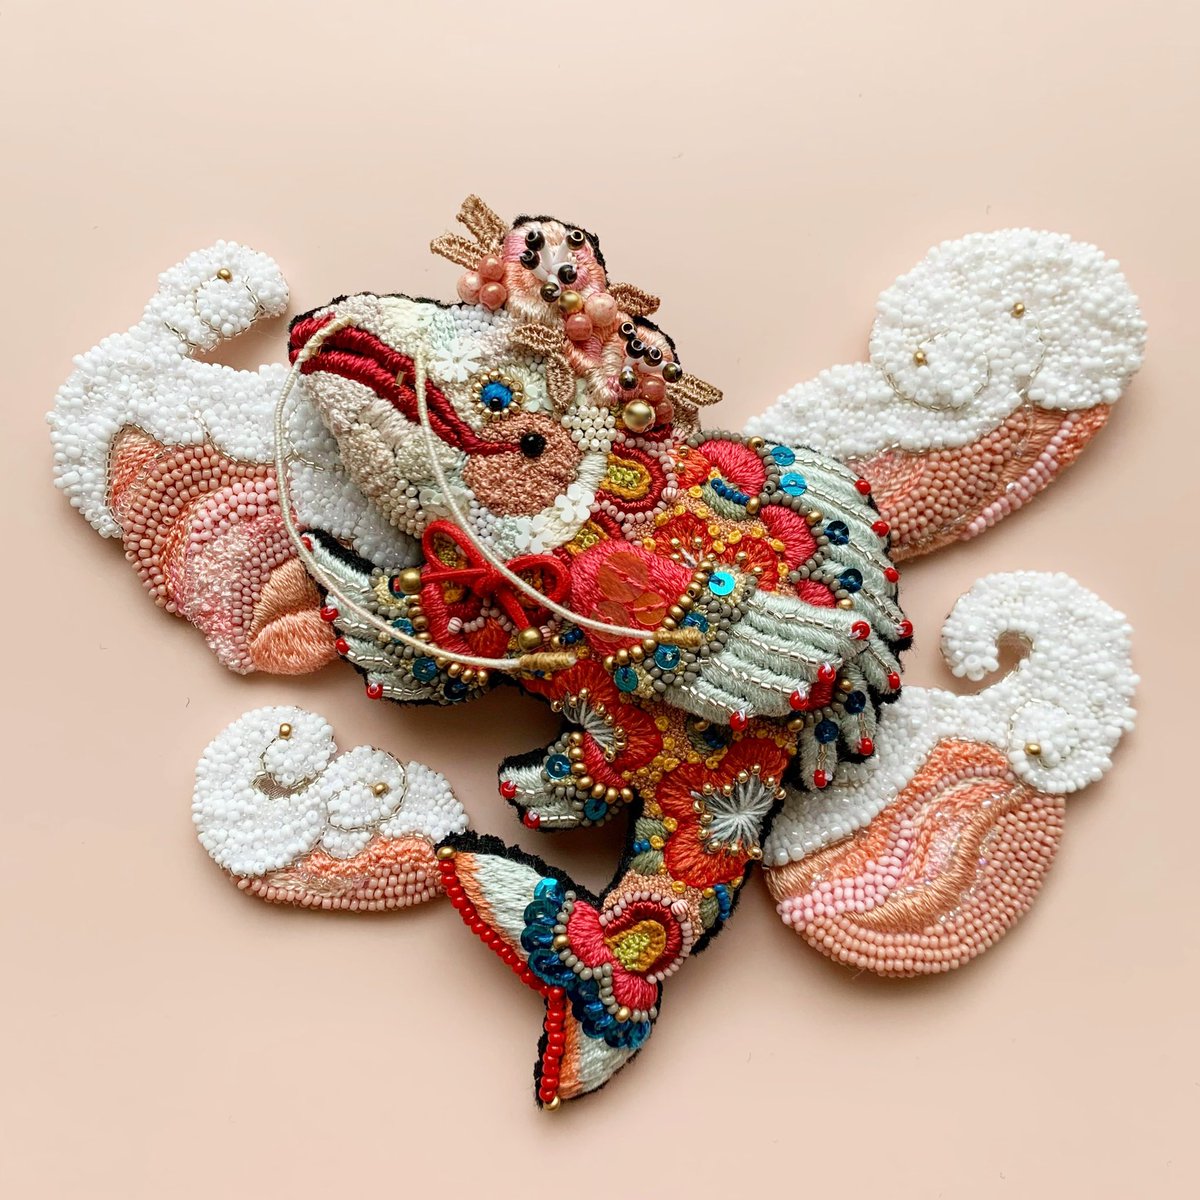 「日本画の合間に制作している刺繍作品のパーツ一部。イメージ通り仕上がる事を願いなが」|シロのイラスト